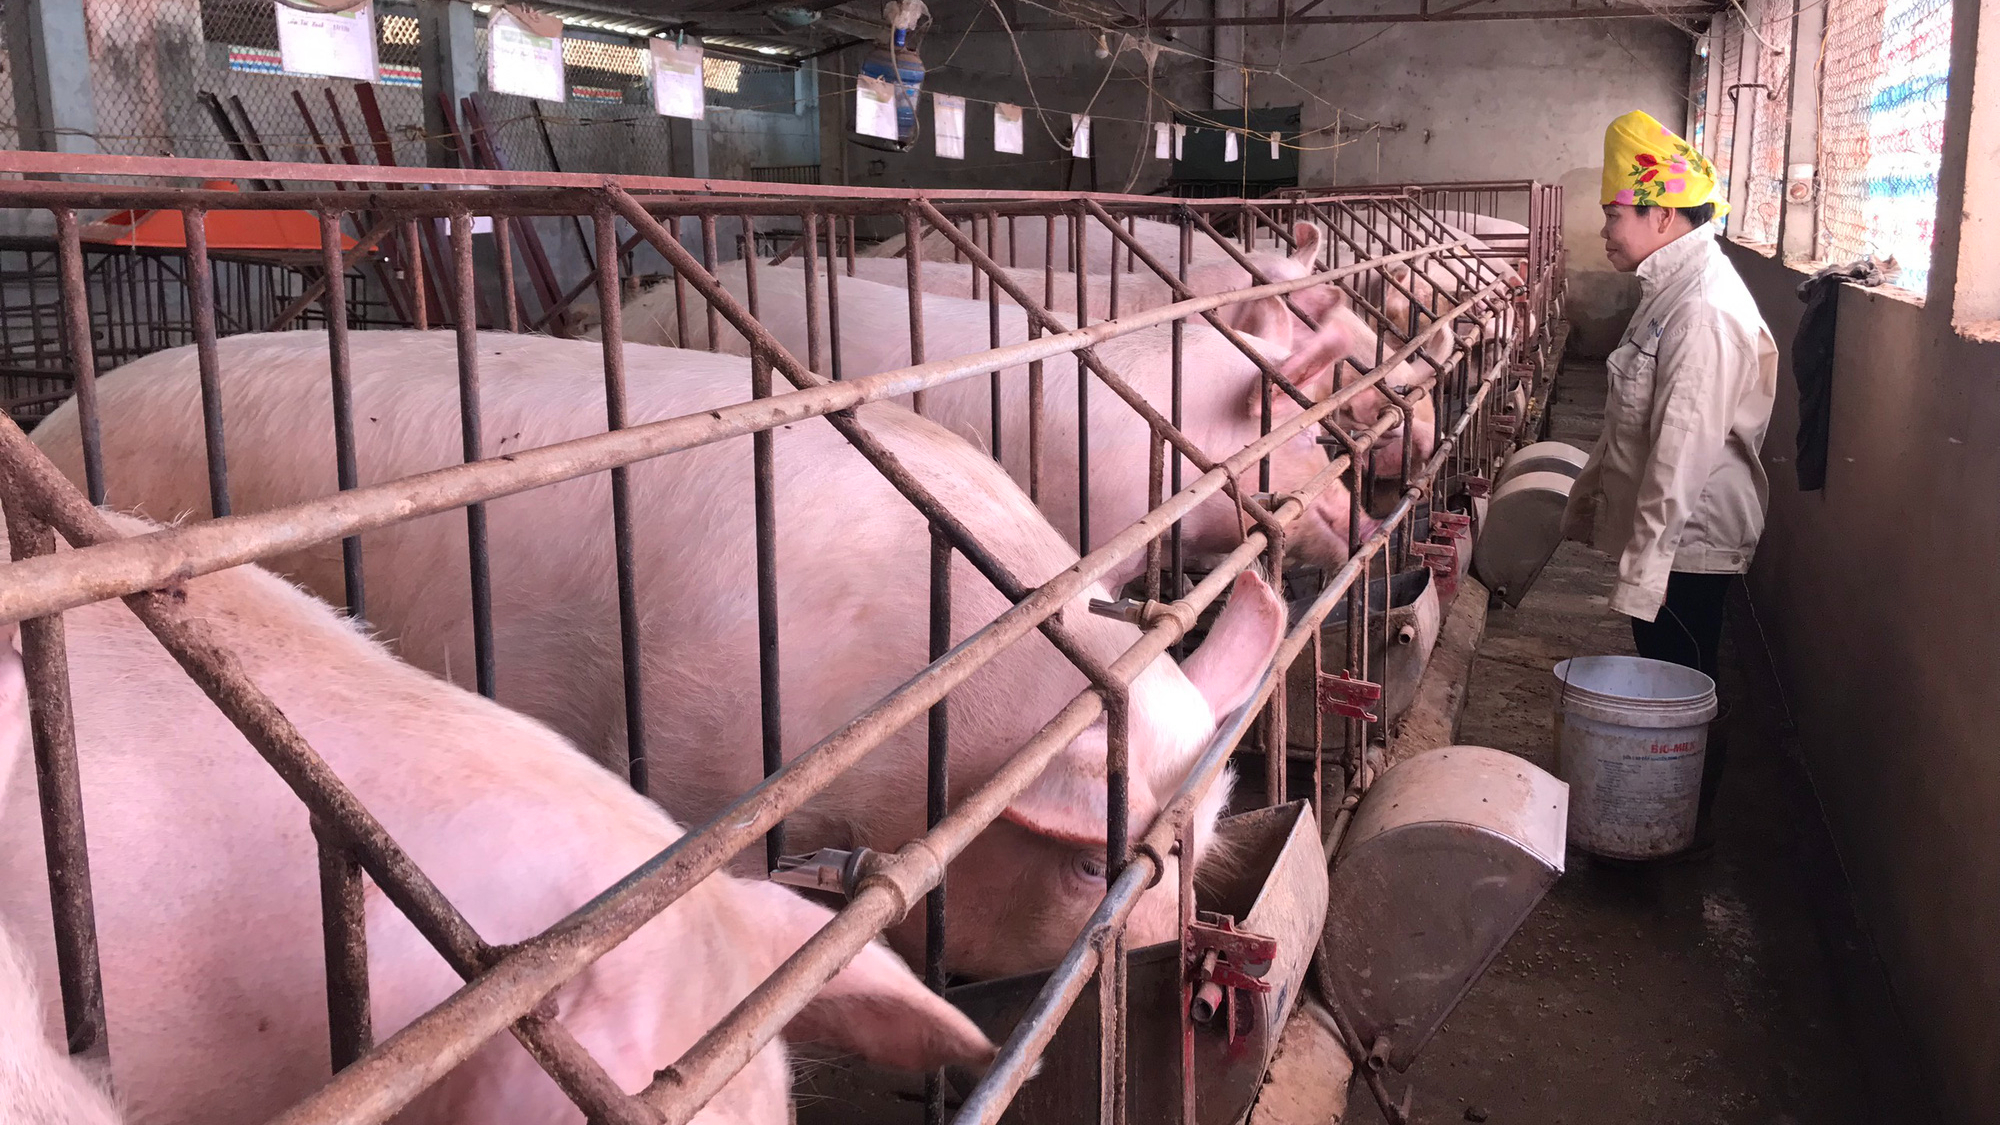 Mô hình 2 trong 1 cho trang trại chăn nuôi lợn hướng đi bền vững trong  định hướng vừa phát triển kinh tế và đảm bảo yếu tố an toàn môi trườngBan